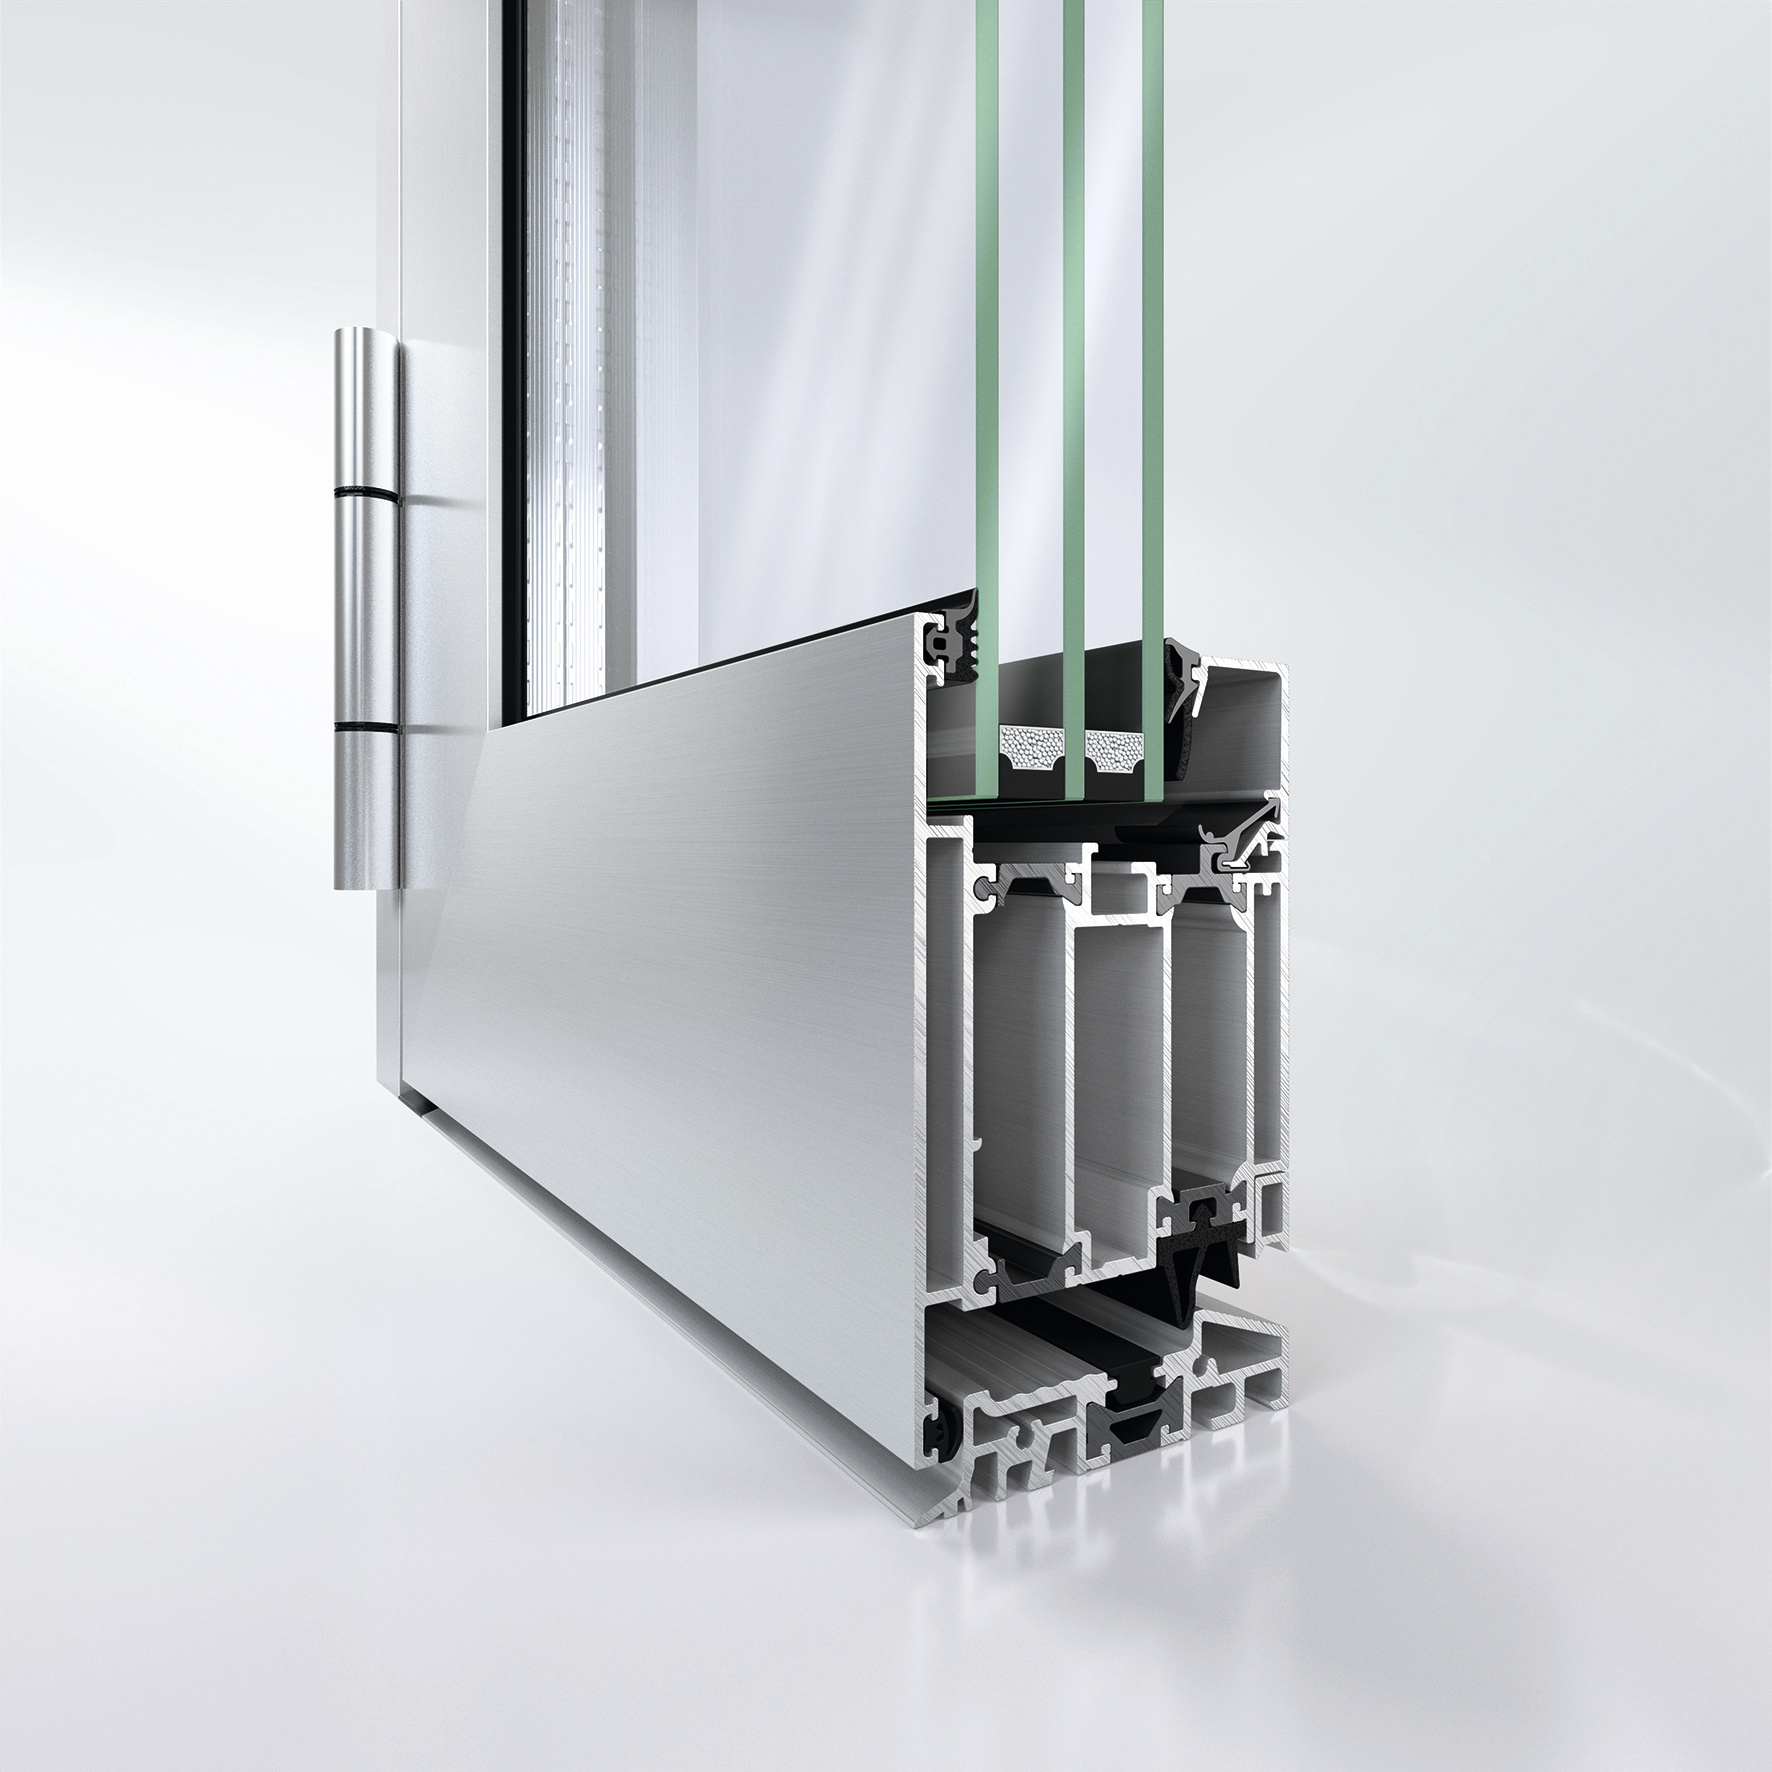 Dverový systém Schüco AD UP 75 (univerzálna platforma hliníkových dverí, základná stavebná hĺbka 75 mm) s certifikáciou Cradle to Cradle na úrovni Silver, ponúka dlhodobú funkčnú spoľahlivosť pre každú aplikáciu, či už ide o štýlové vchodové dvere alebo dvere v komerčných budovách, ktoré sú často namáhané používaním.